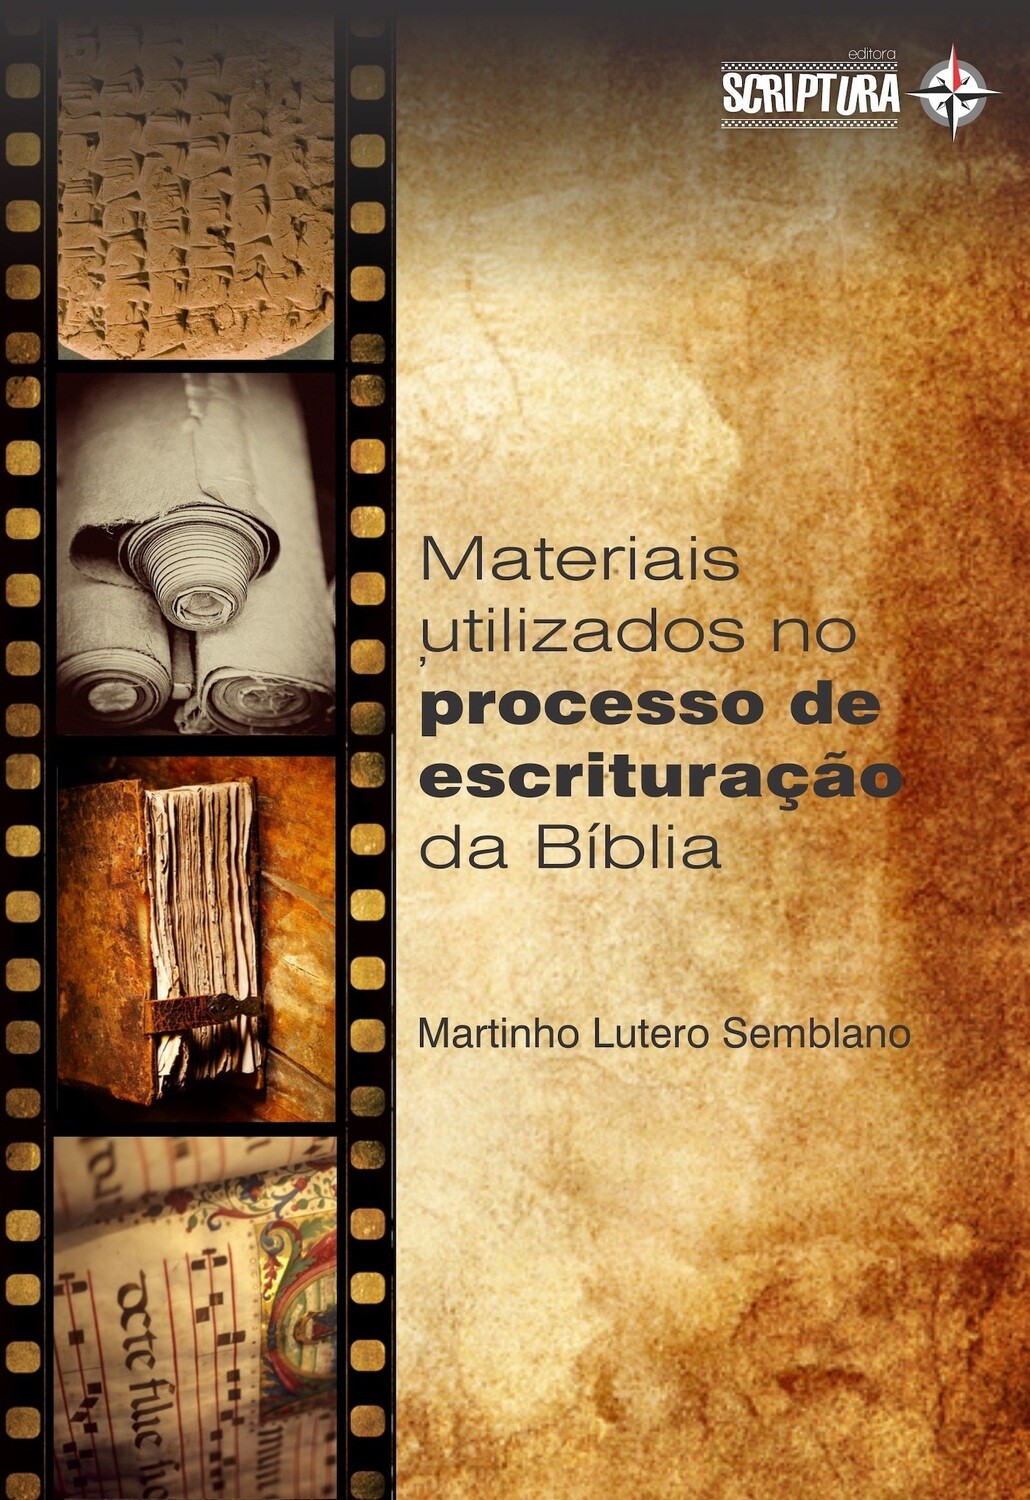 Materiais, formatos e instrumentos utilizados no processo de escrituração bíblica